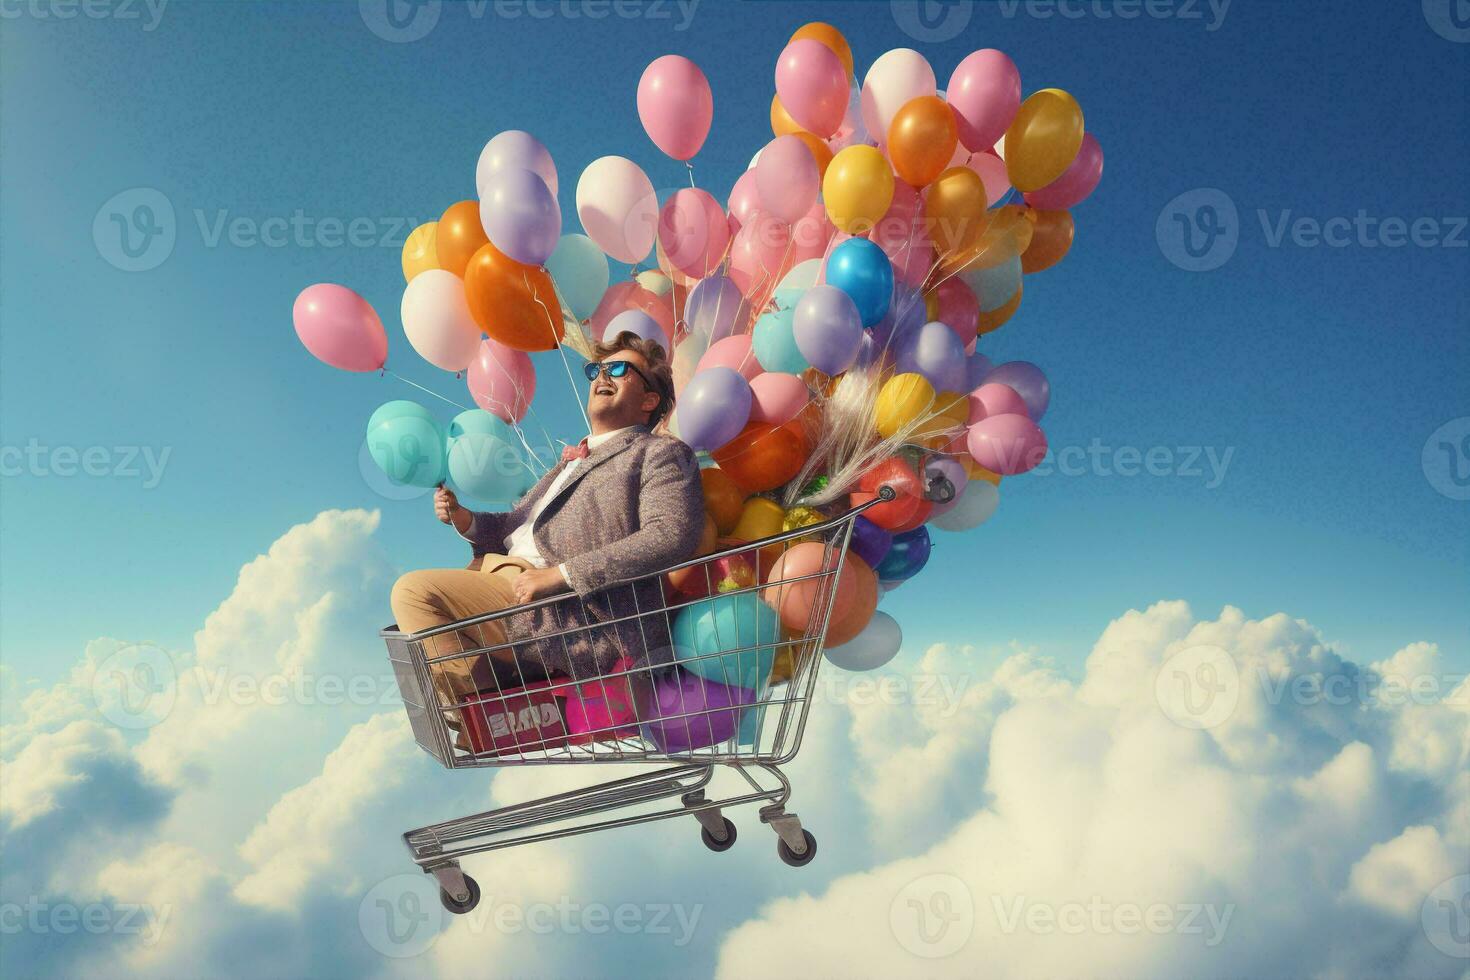 uitverkoop concept boodschappen doen winter aankoop kar helium achtergrond traditioneel trolley handel mand kopen Kerstmis foto